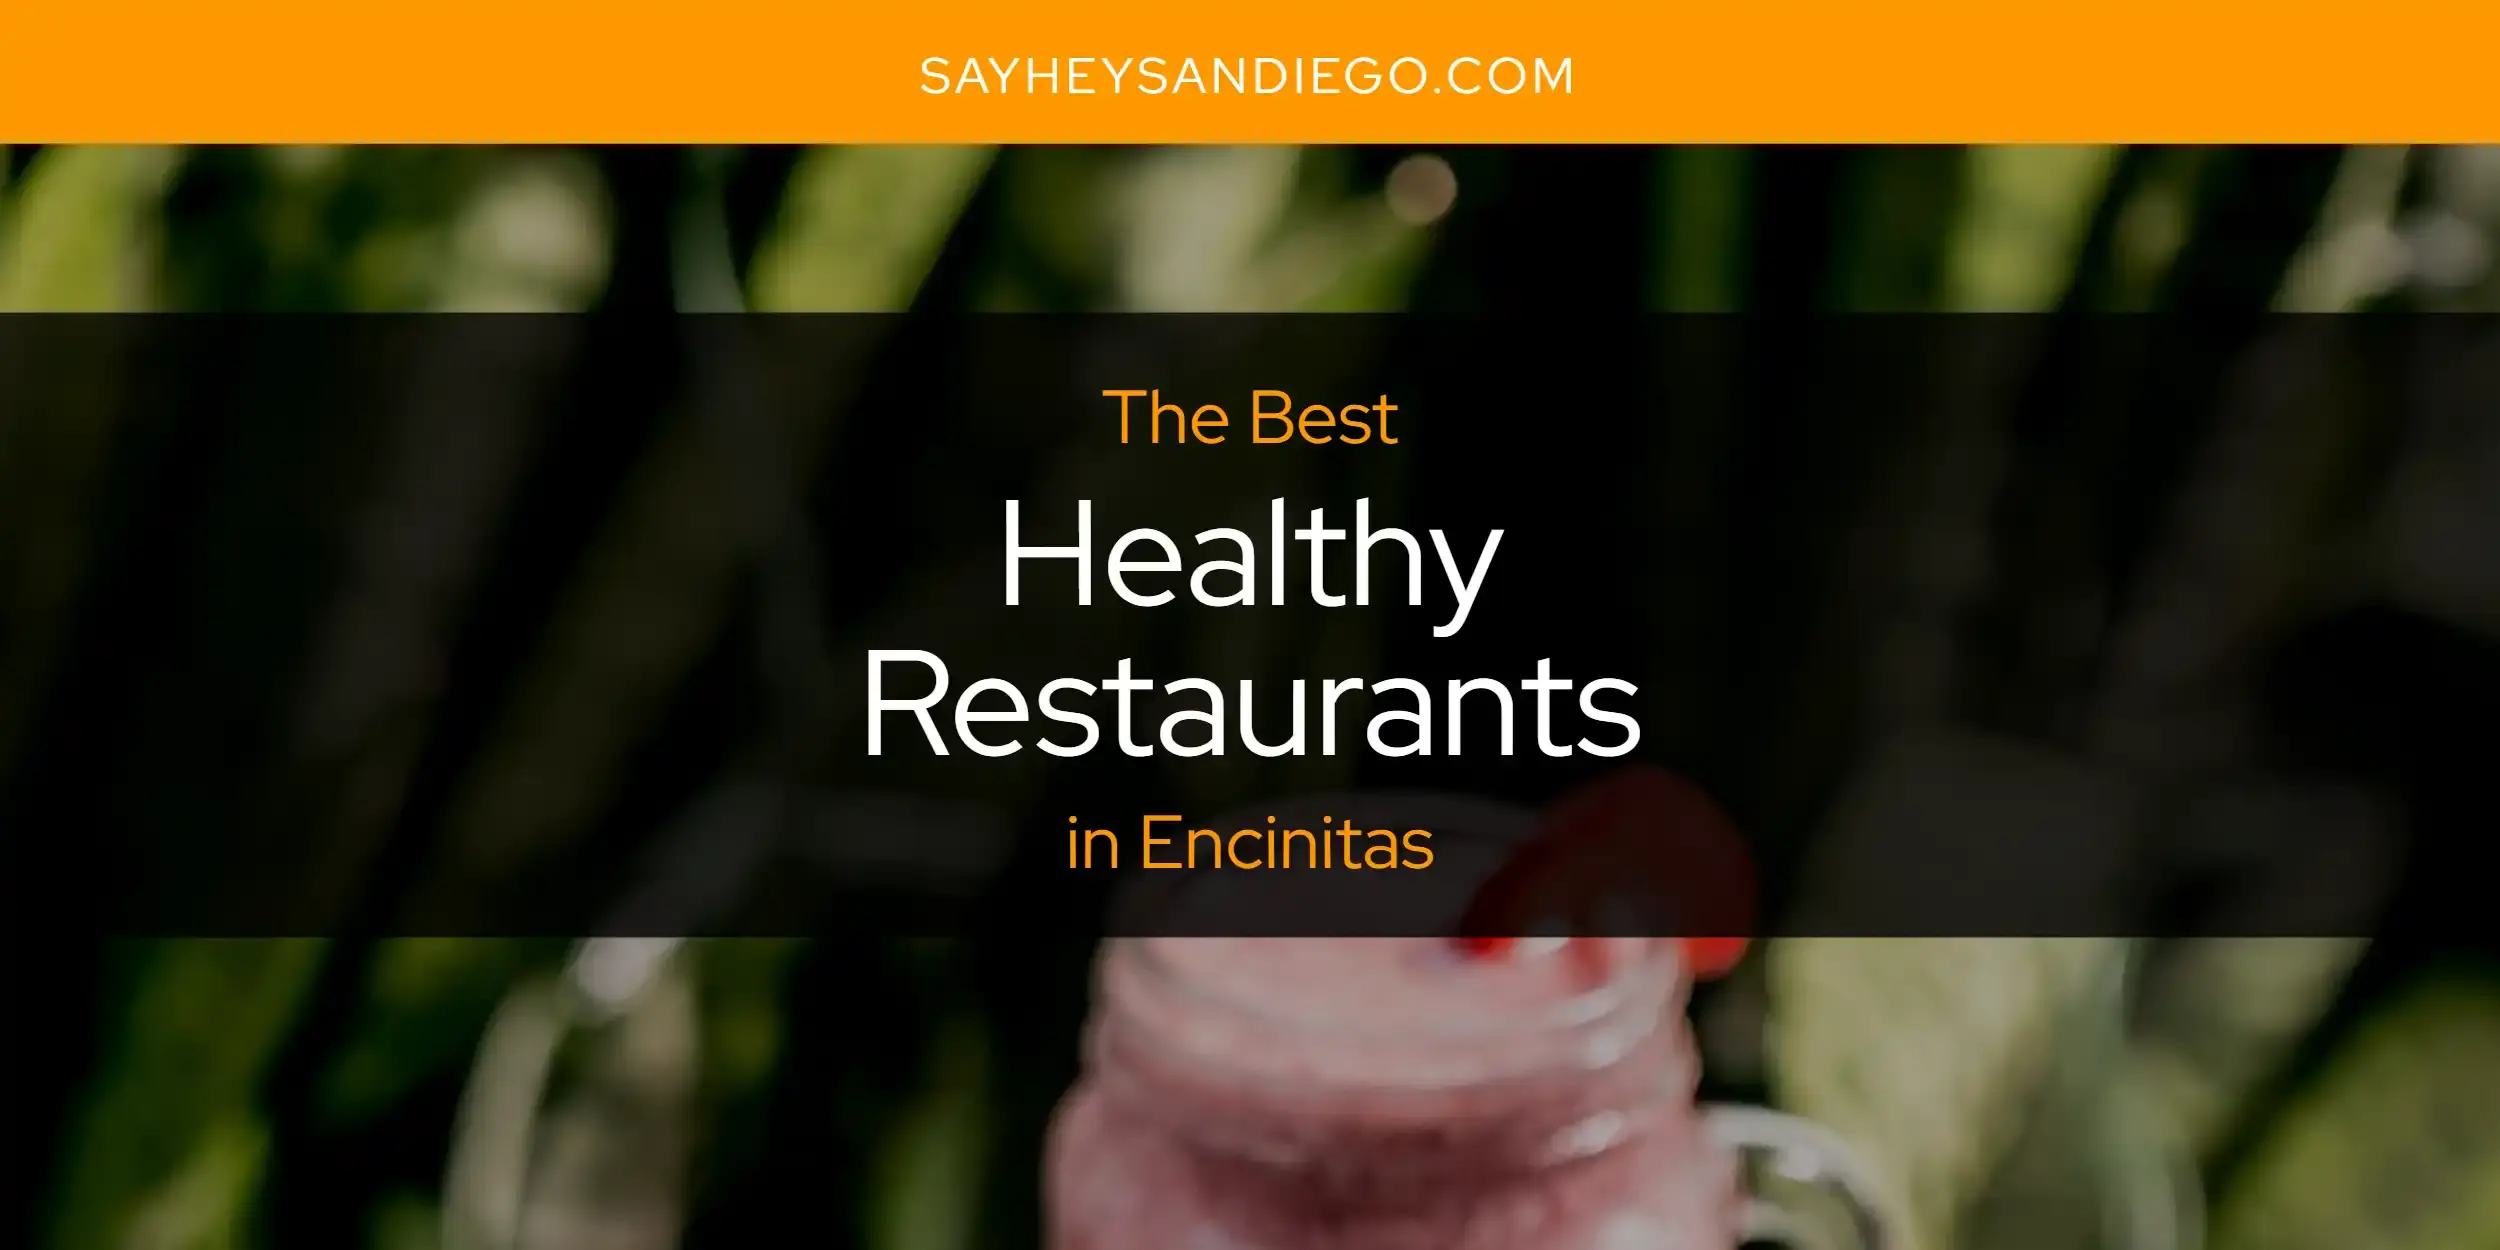 Best Healthy Restaurants in Encinitas? Here's the Top 13